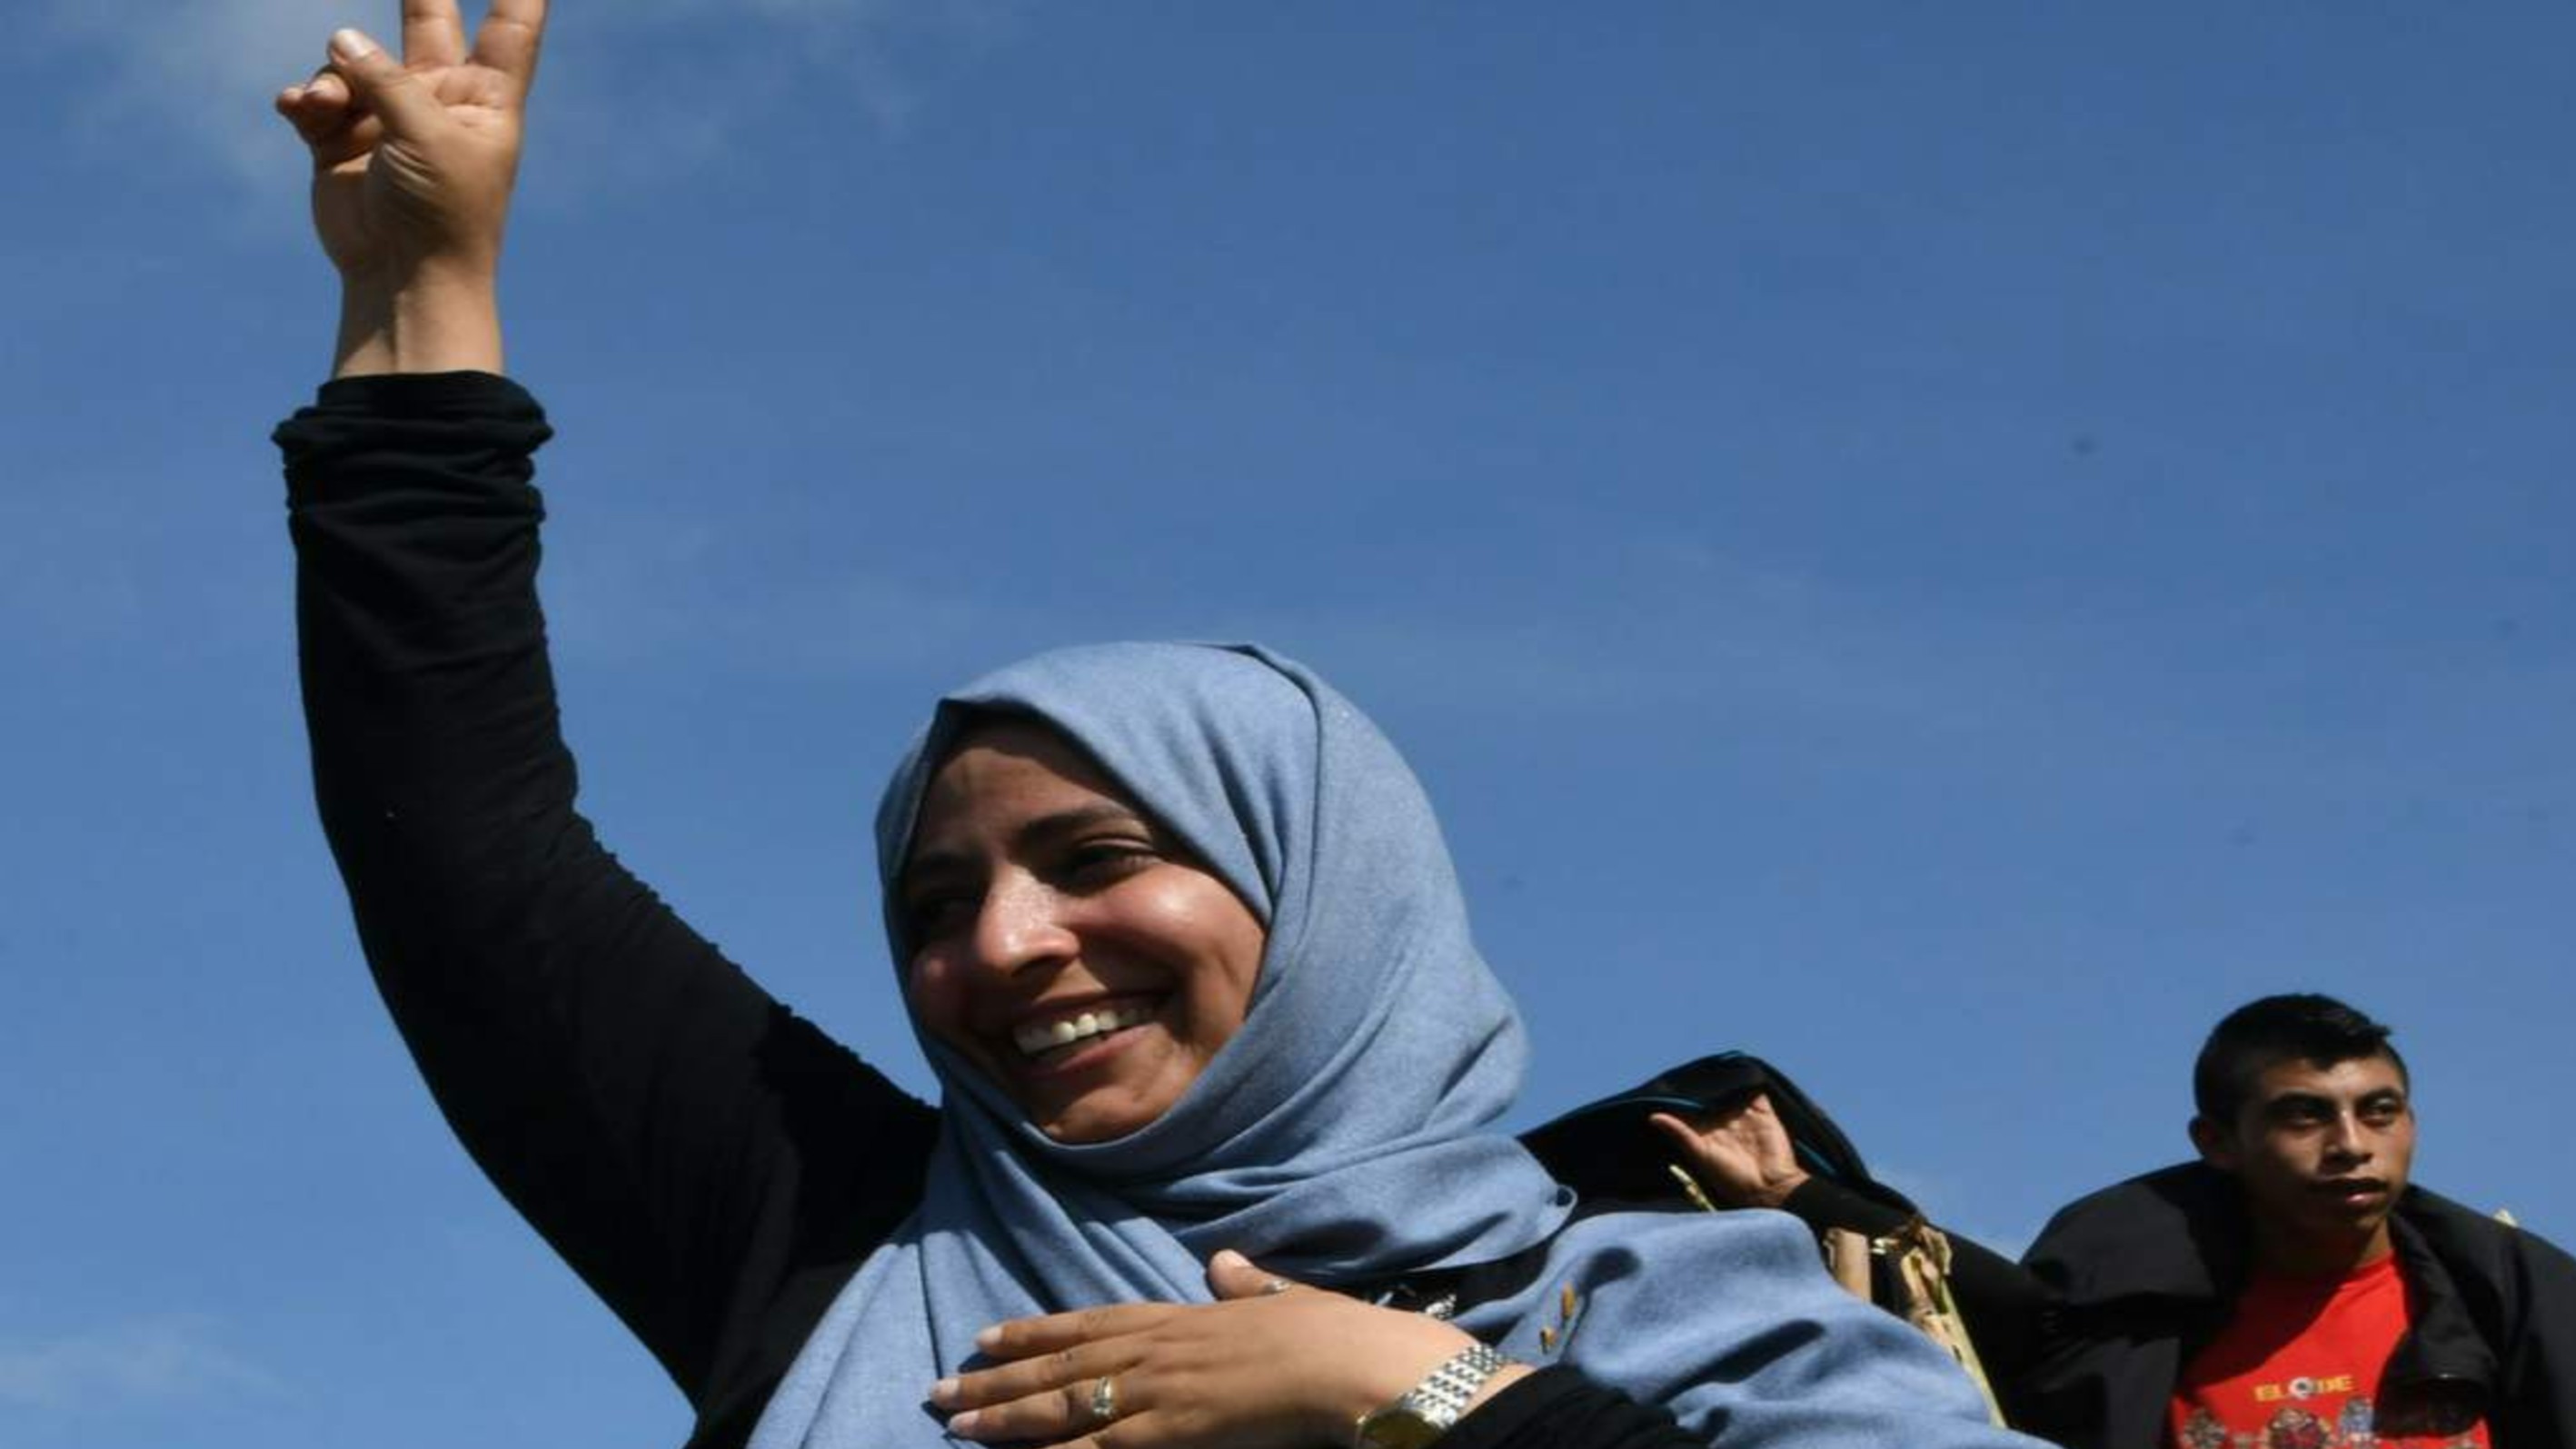 حوار الناشطة الحائزة على جائزة نوبل للسلام توكل كرمان مع صحيفة إل هيرالدو الكولومبية